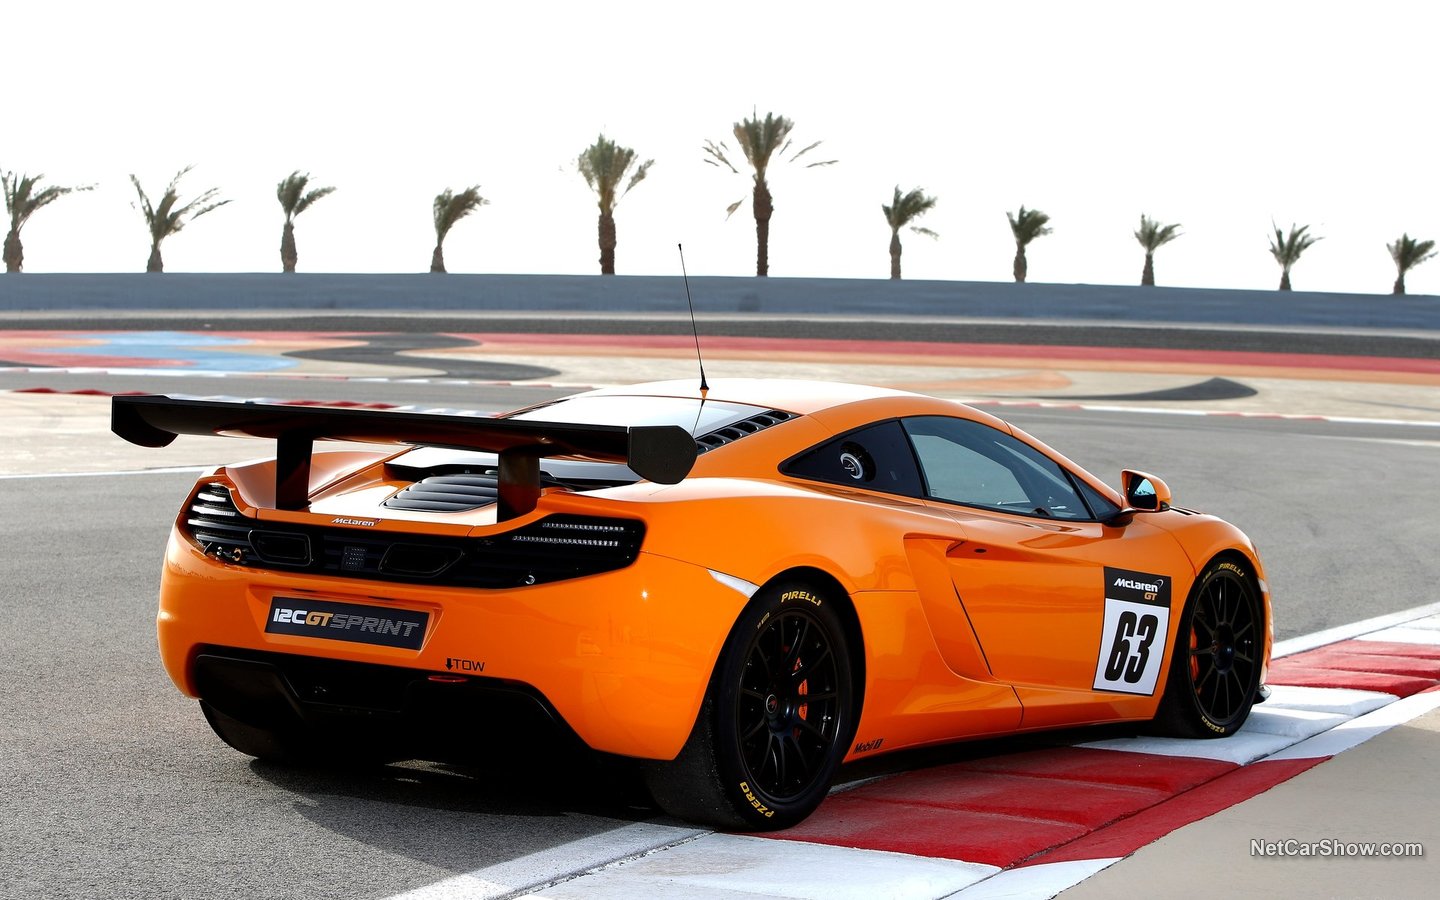 McLaren 12C GT Sprint 2014 6e8b7f92